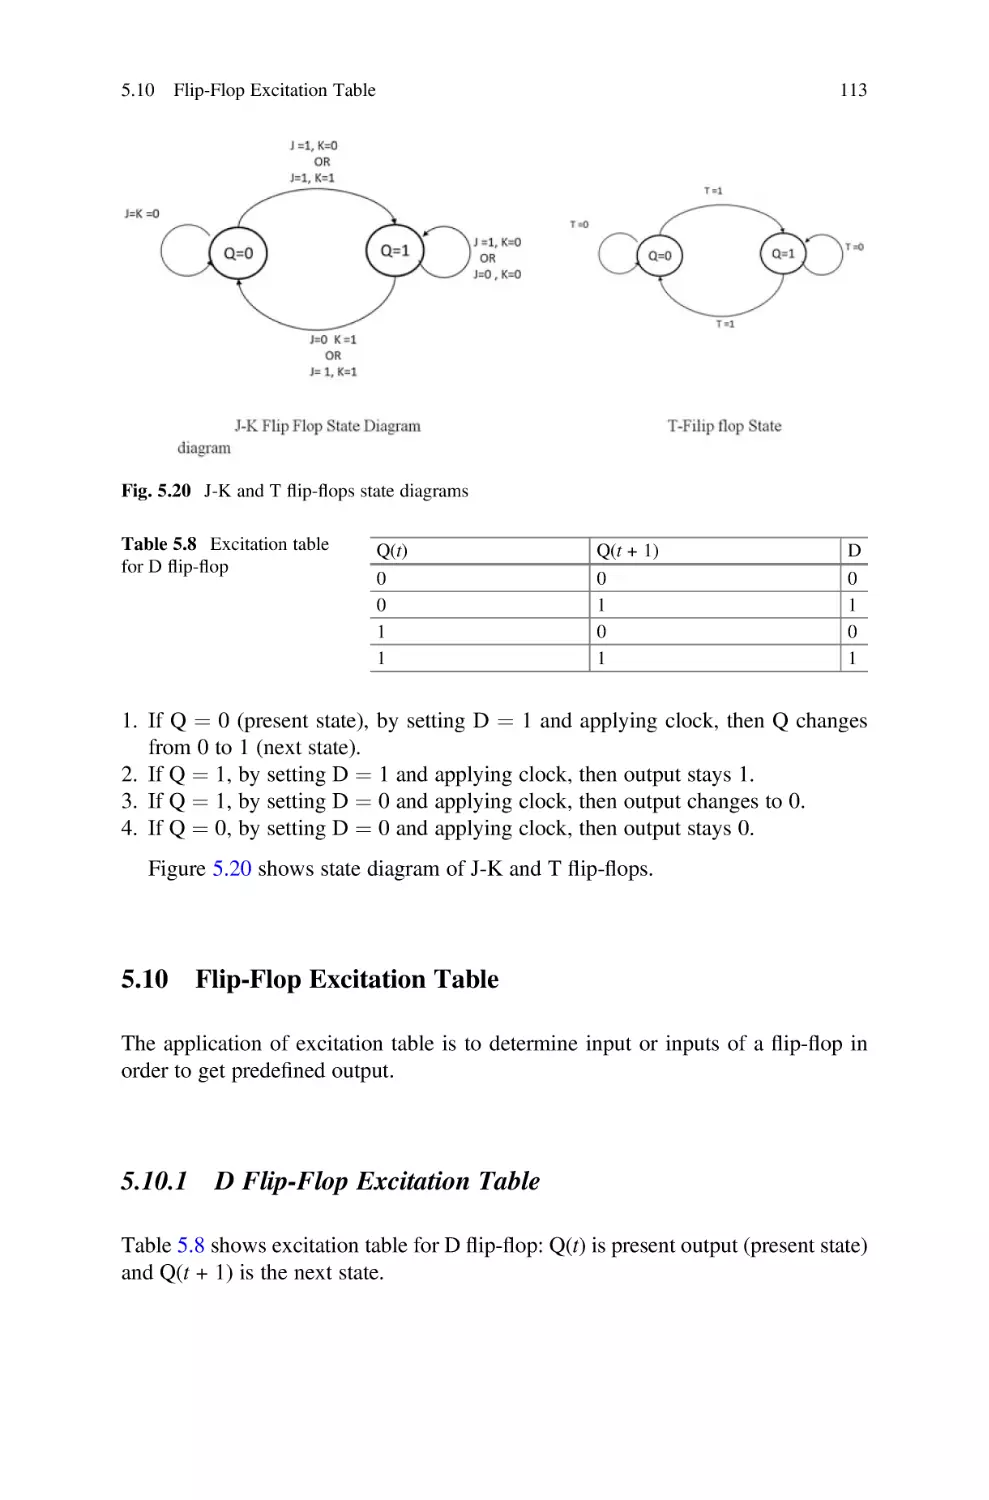 5.10 Flip-Flop Excitation Table
5.10.1 D Flip-Flop Excitation Table